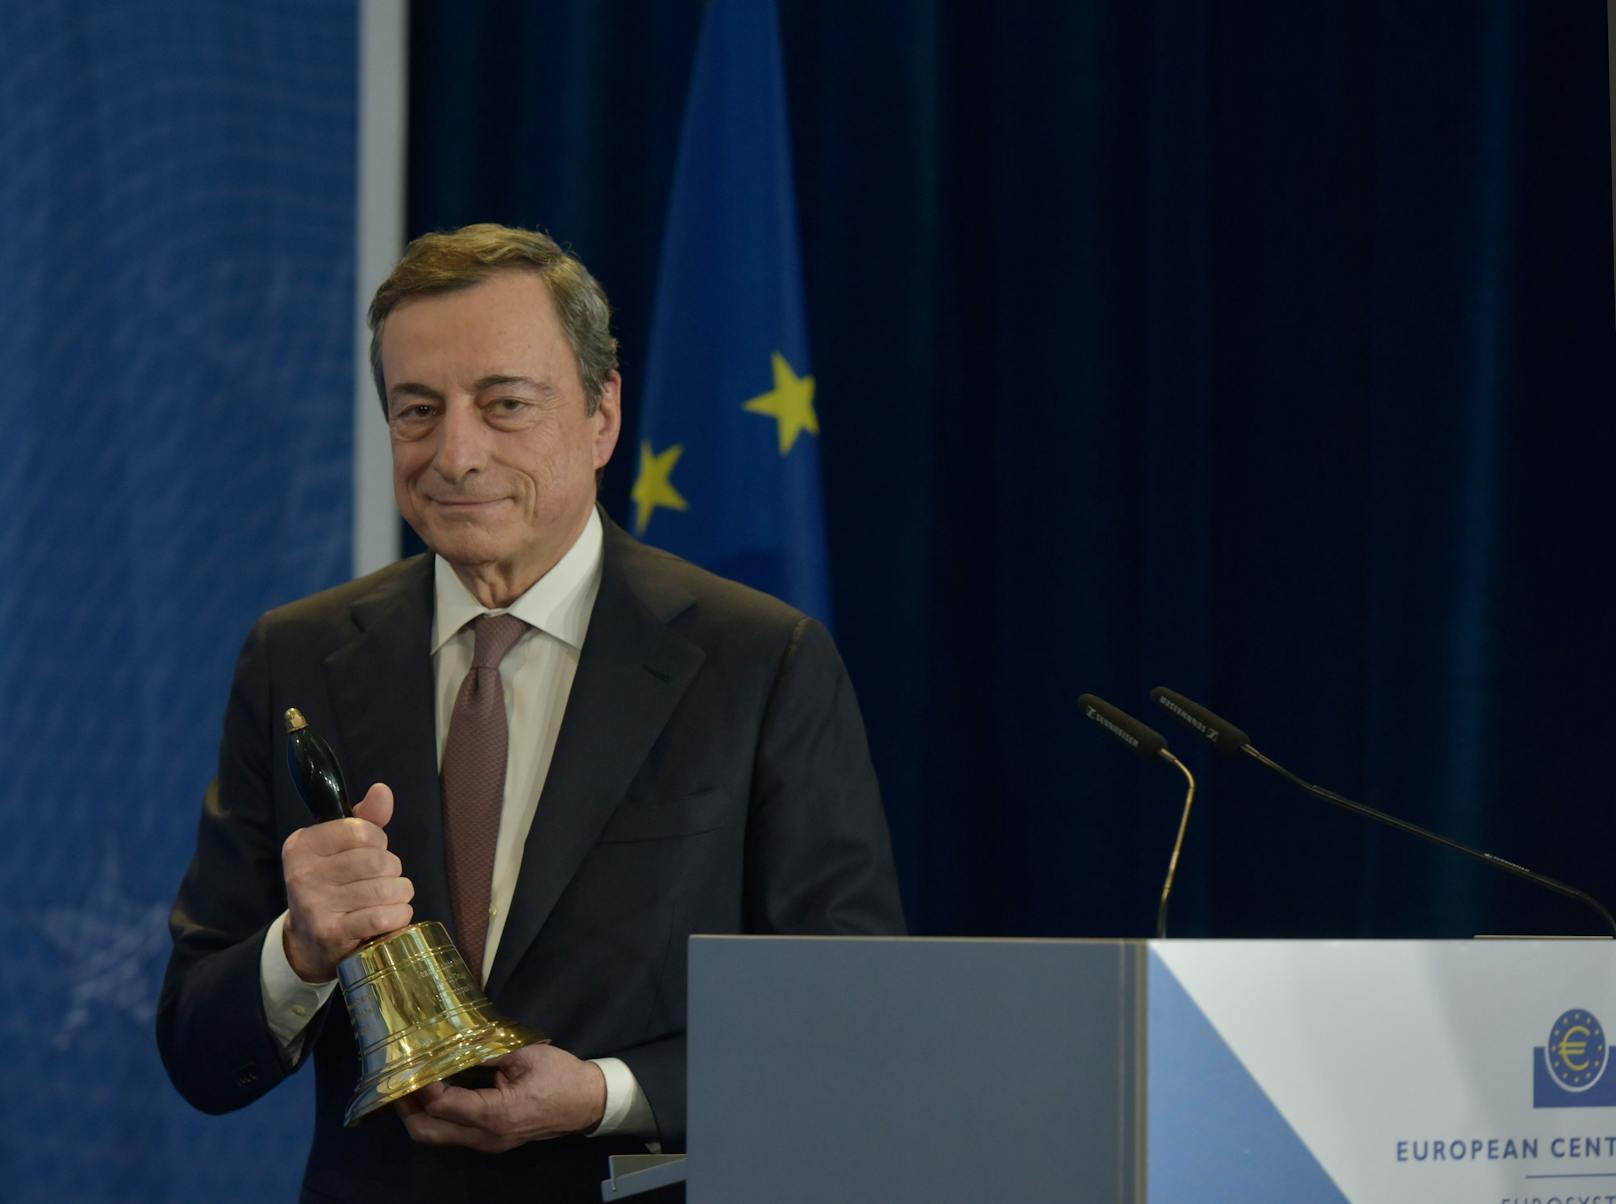 Ein Bild aus früheren Tagen: Bei der Verabschiedung aus der Europäischen Zentralbank musste Mario Draghi noch keinen Mundschutz tragen.